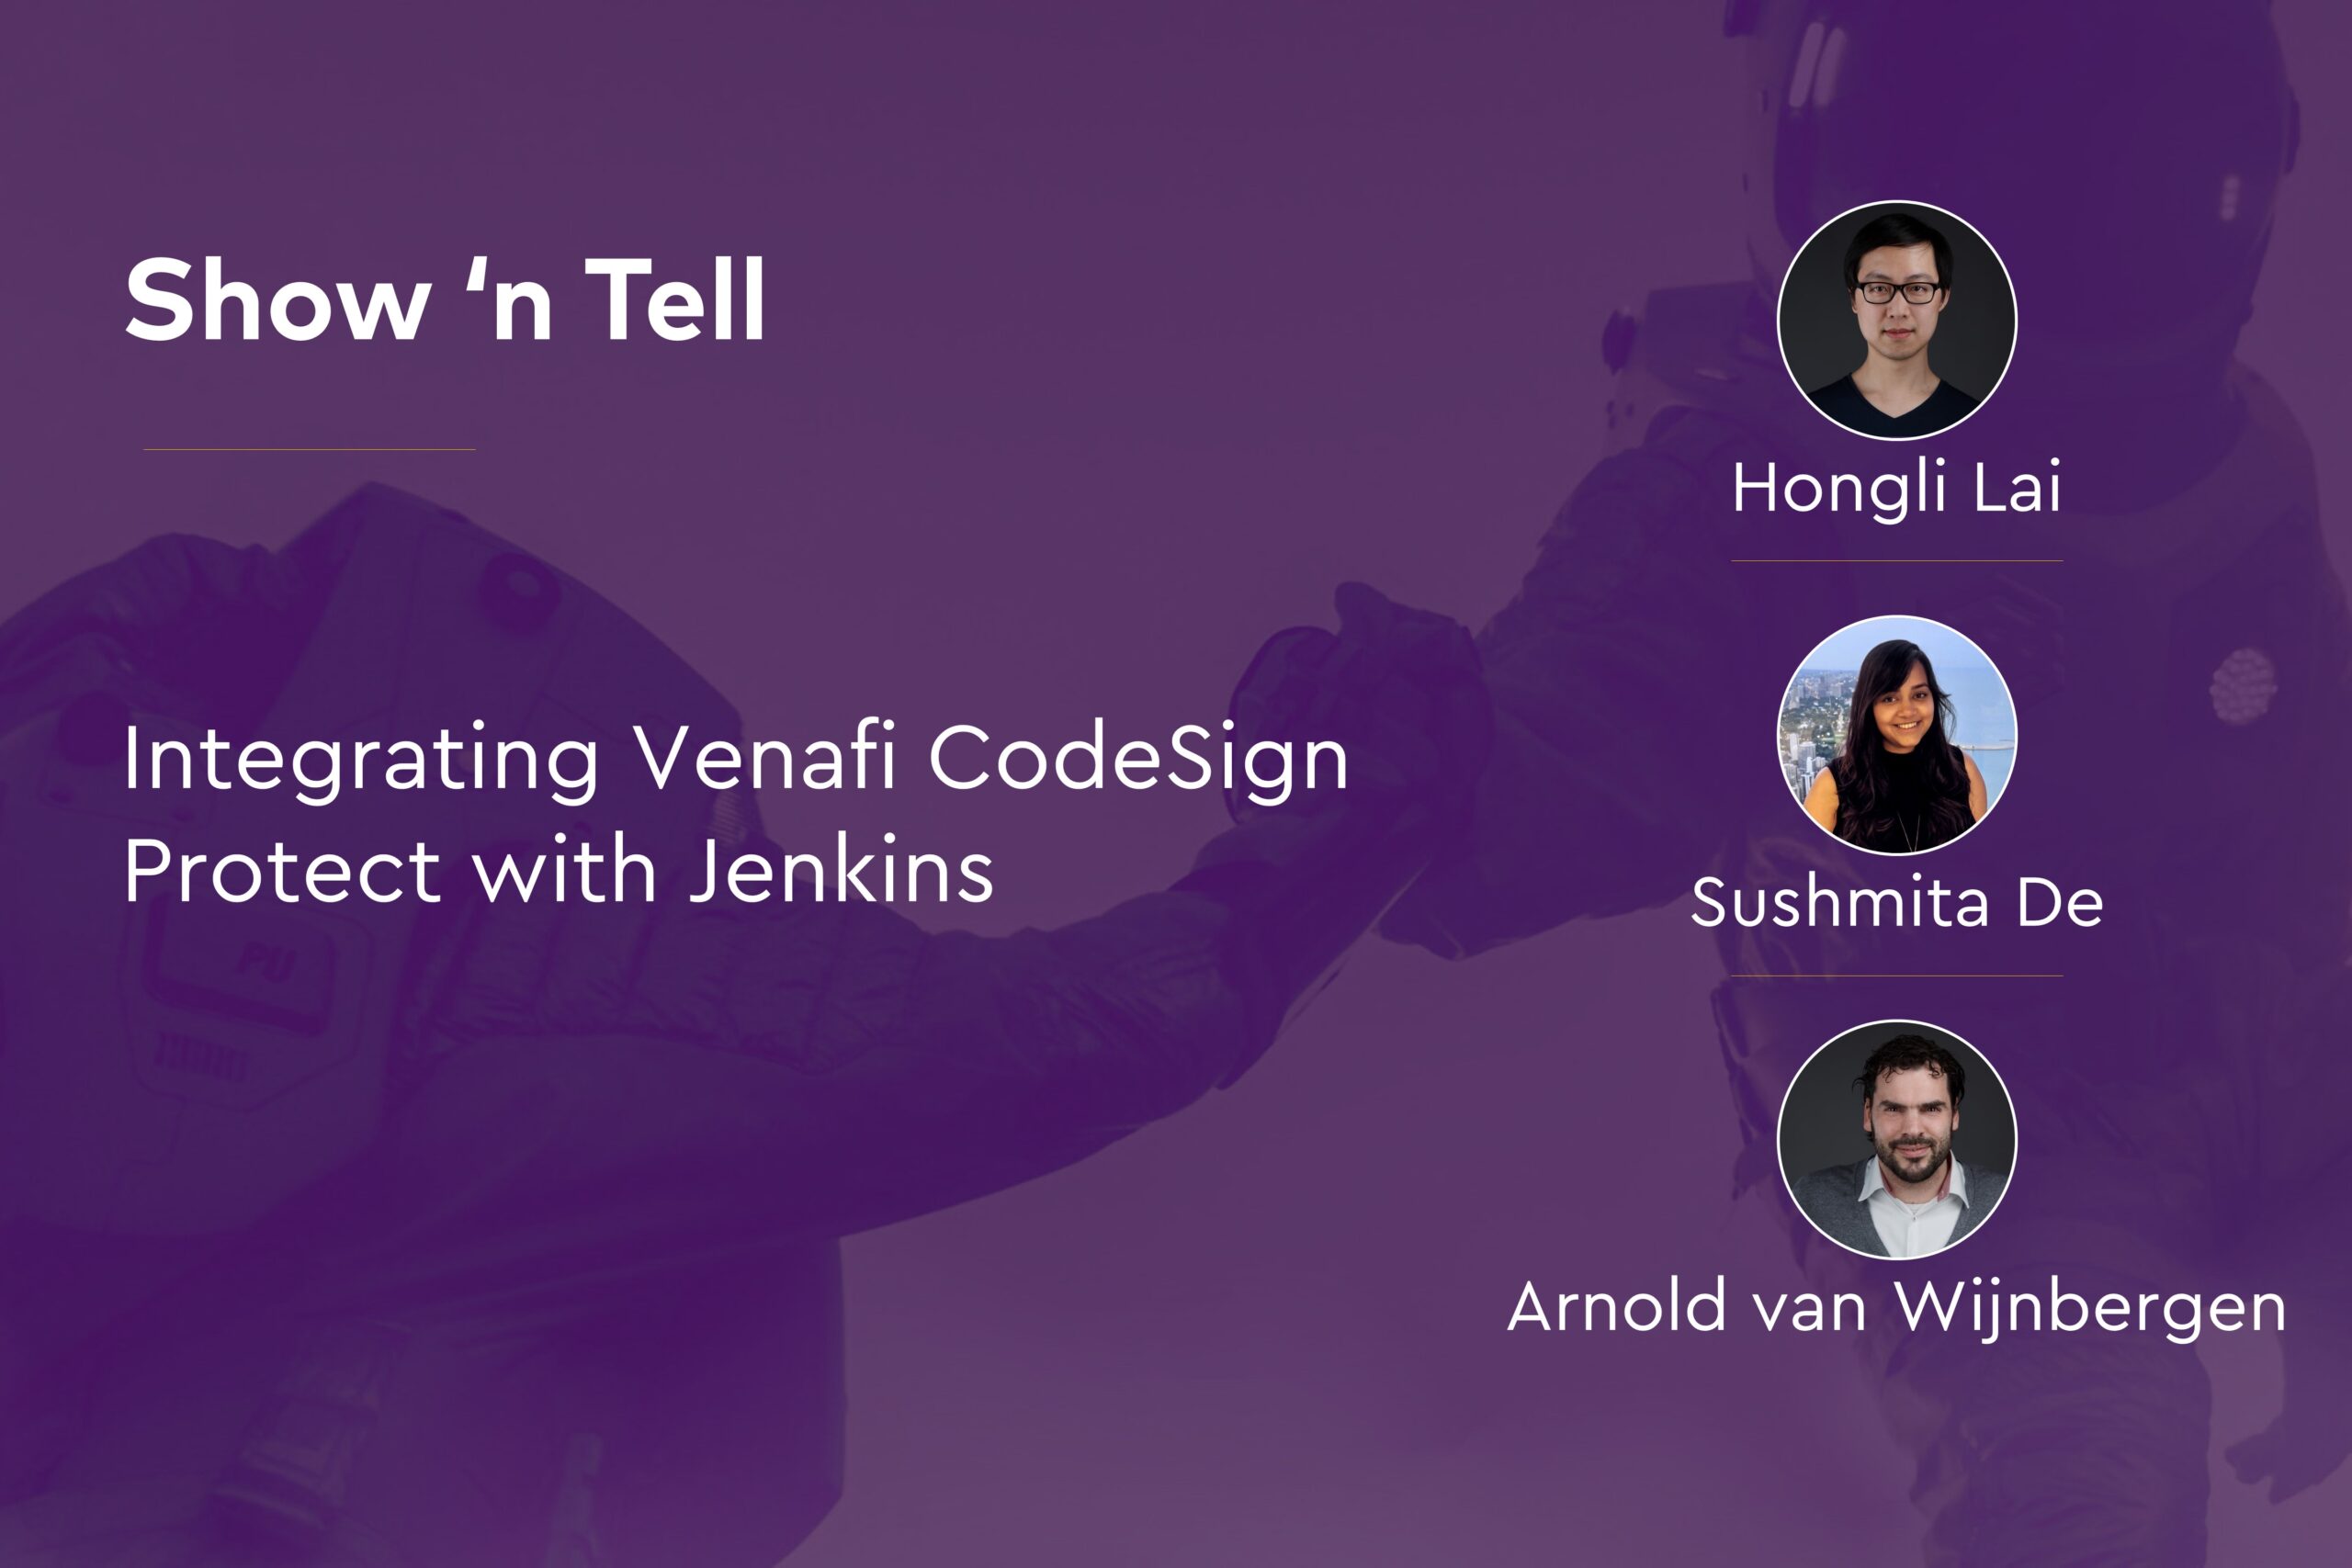 Integrating Venafi CodeSign Protect Jenkins - with Hongli Lai, Sushmita De, and Arnold van Wijnbergen